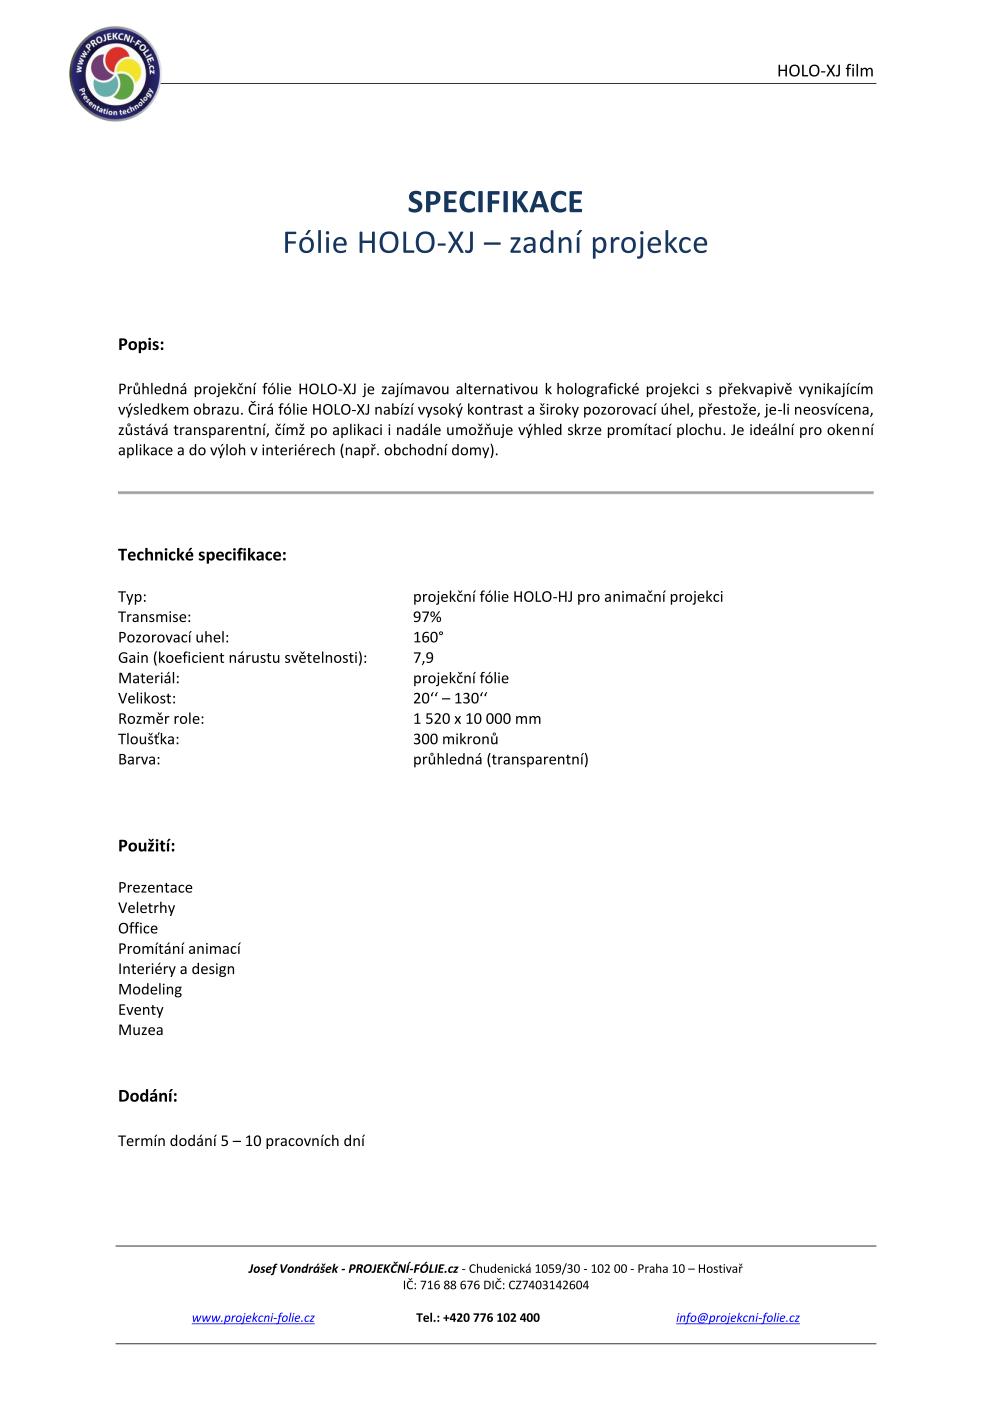 HOLO-XJ - CLEAR - zadní projekce